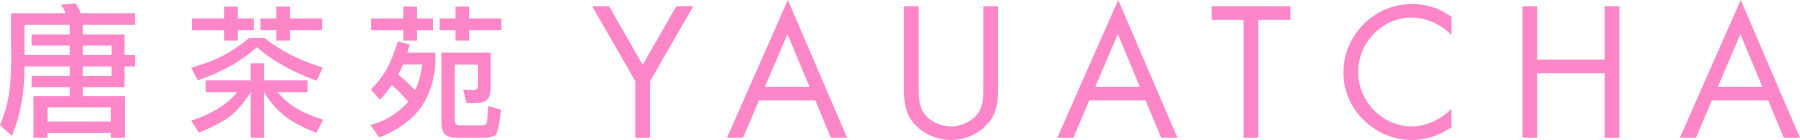 YAU_Logo_Horizontal_pink